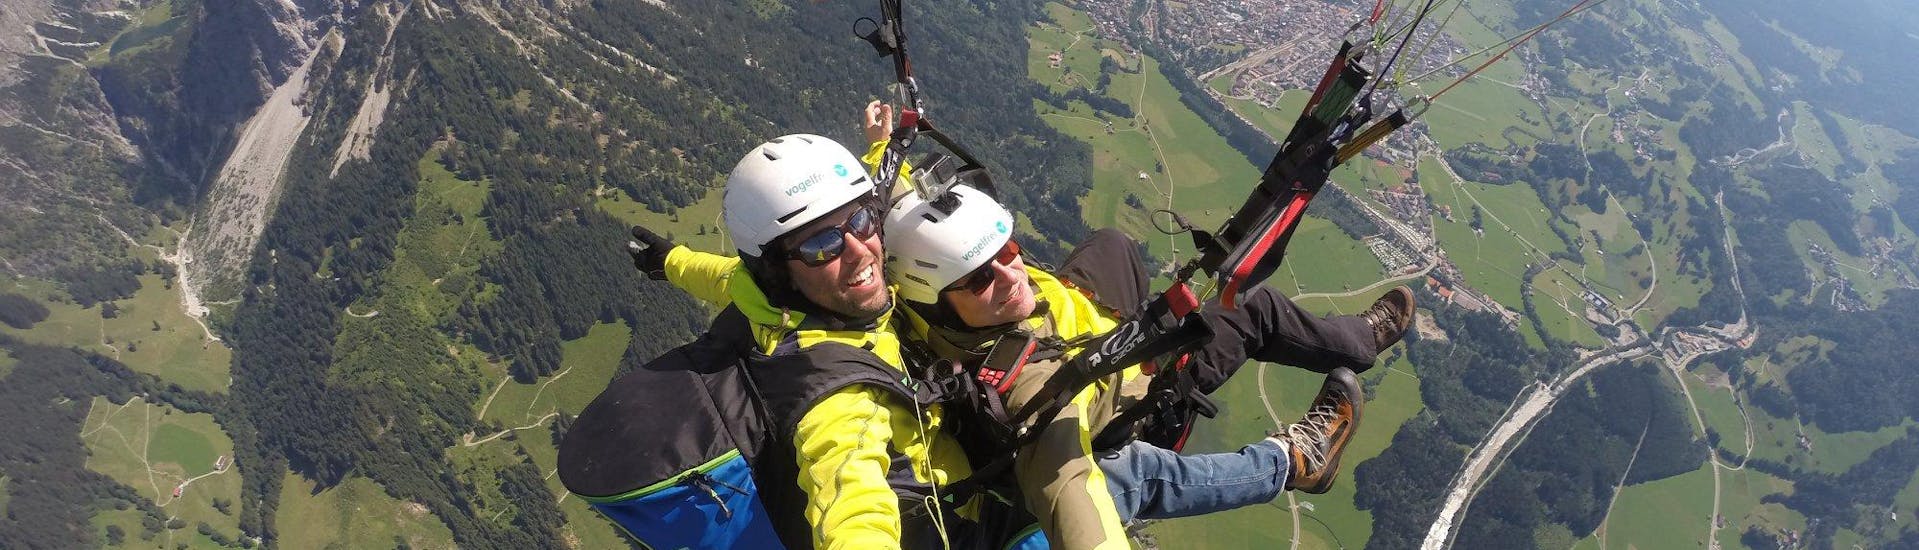 Tandem Paragliding in Oberstdorf from Nebelhorn.